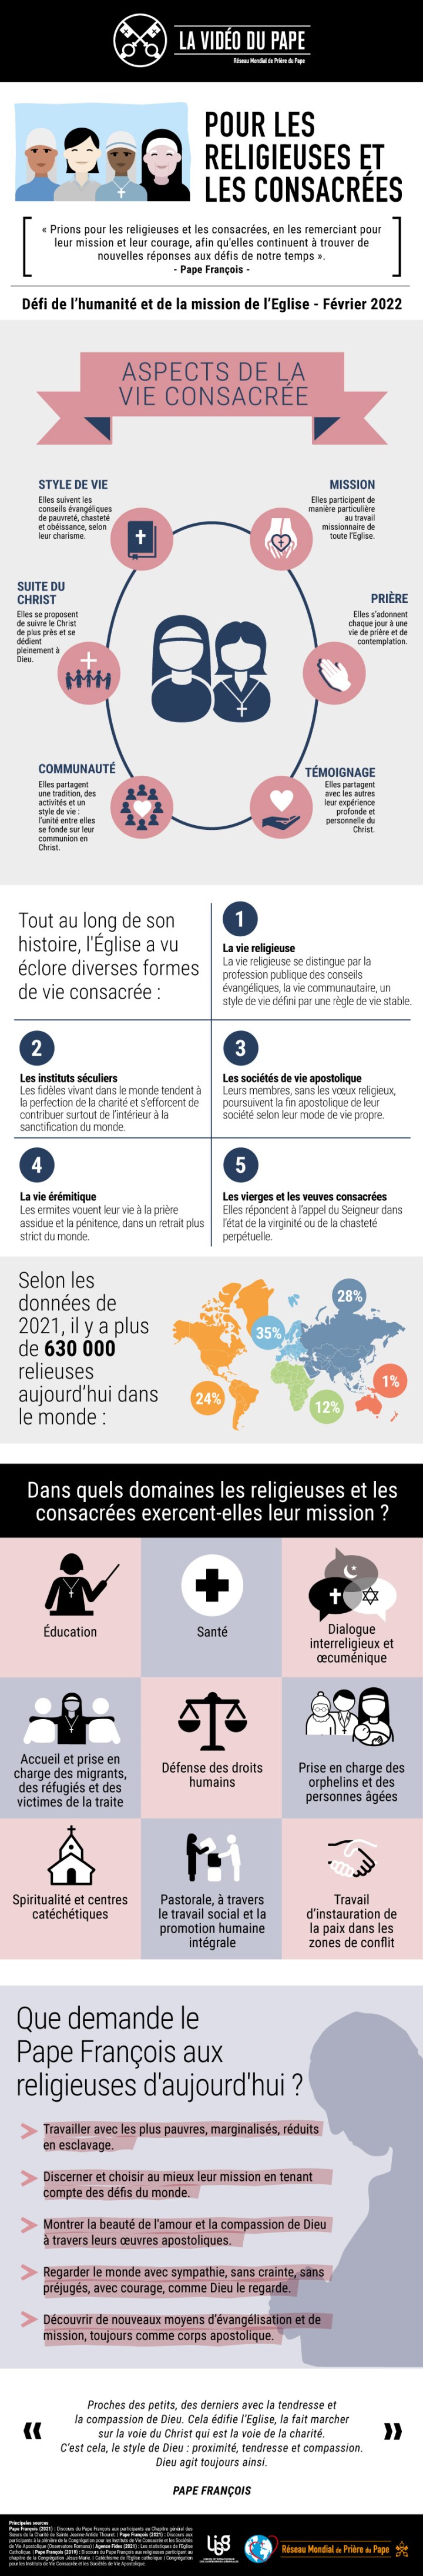 Infographic-TPV-2-2022-FR-Pour-les-religieuses-et-les-consacrees.jpg